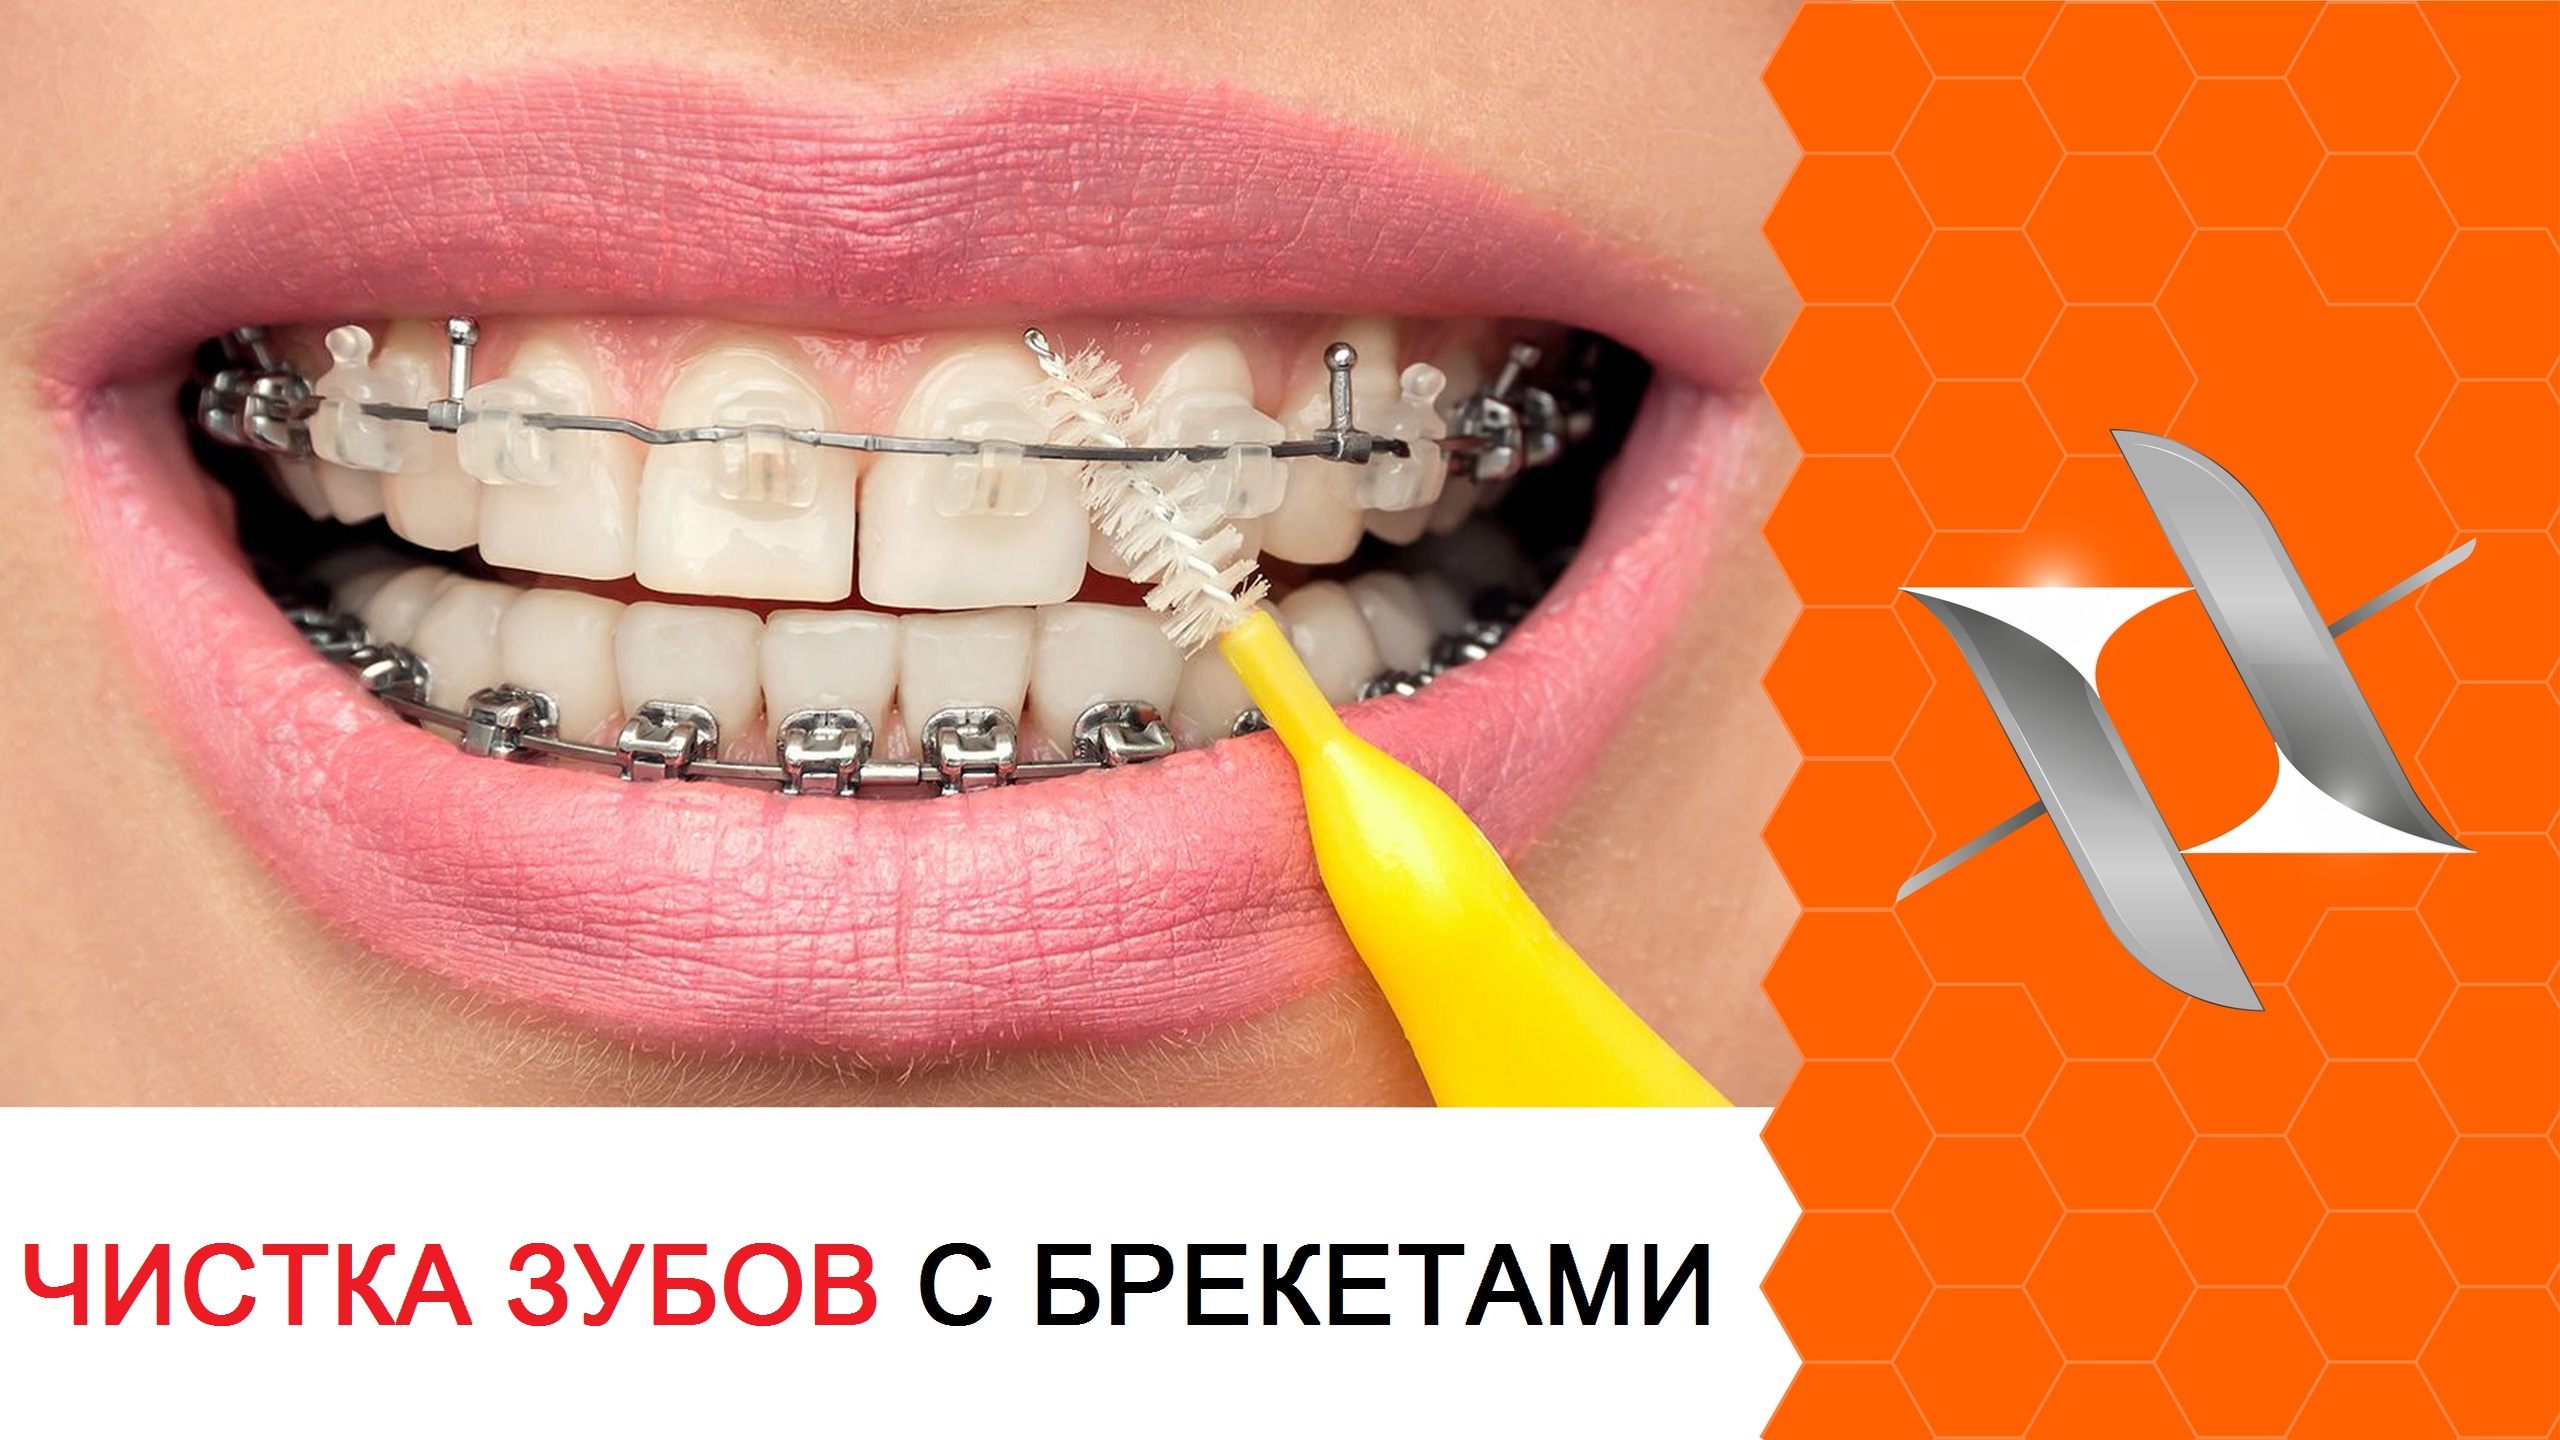 Полный алгоритм чистки зубов с брекетами: 6 шагов.